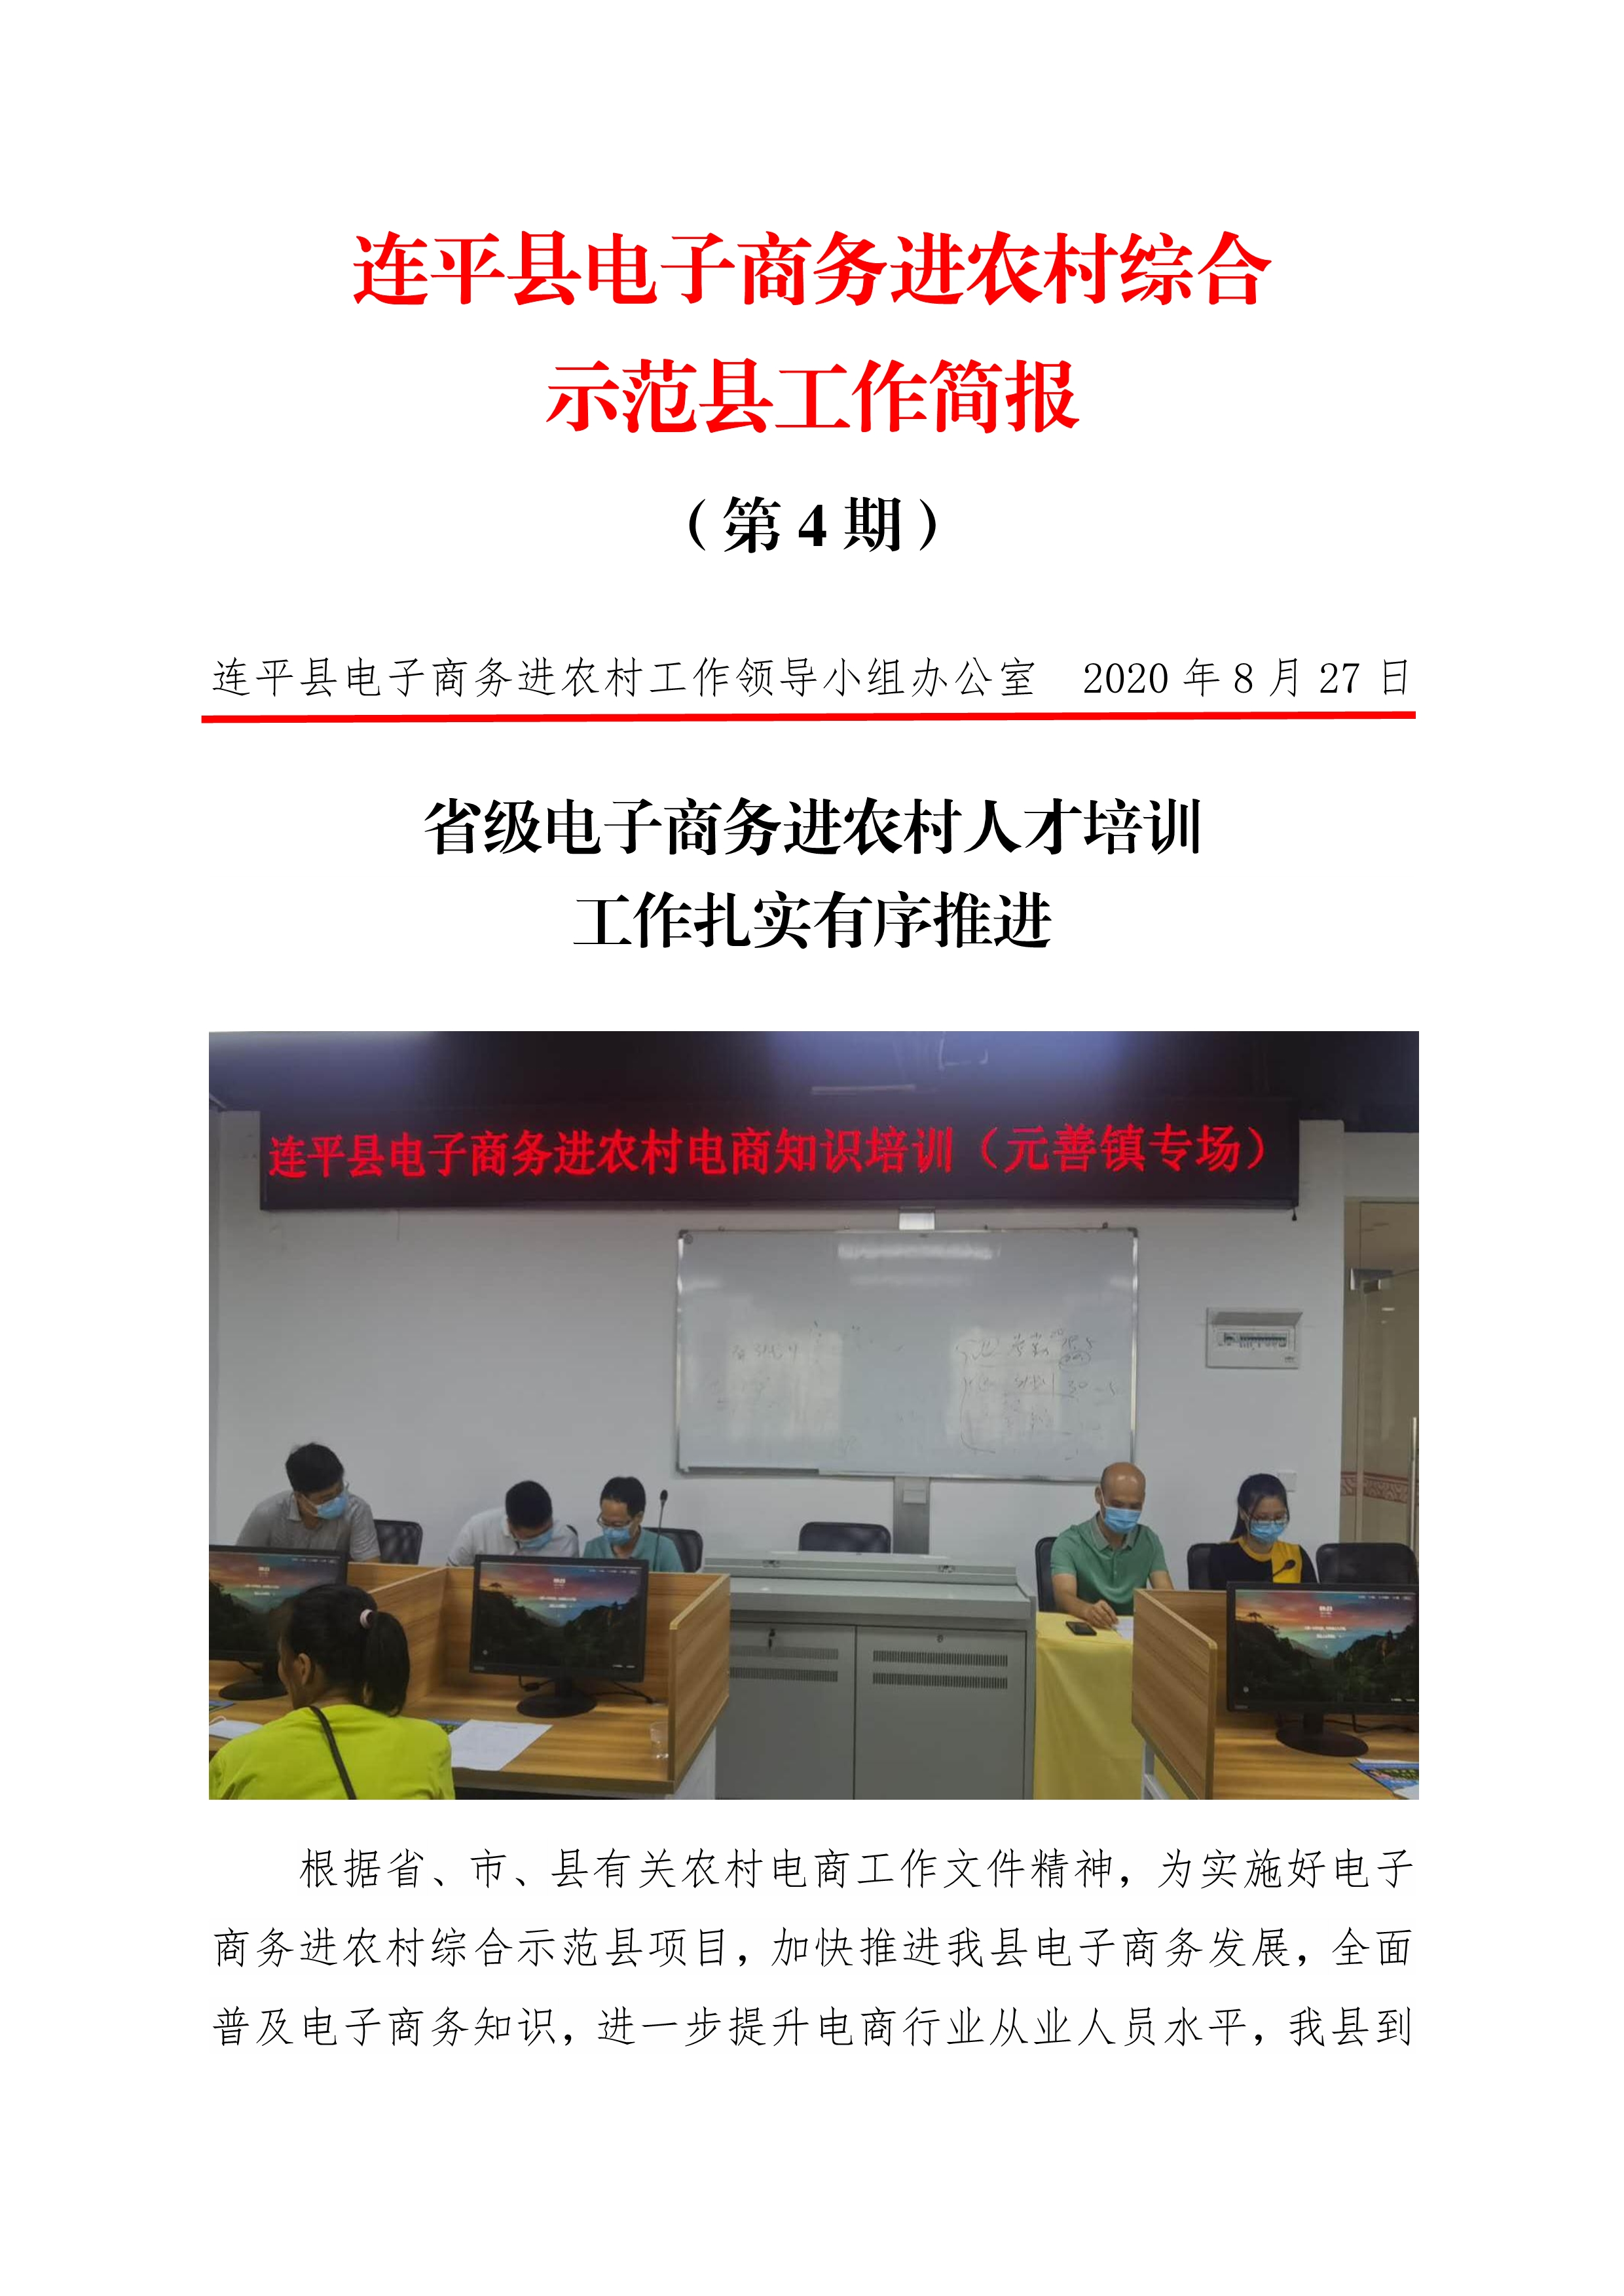 连平县电子商务进农村综合示范县项目工作简报第4期_0.jpg